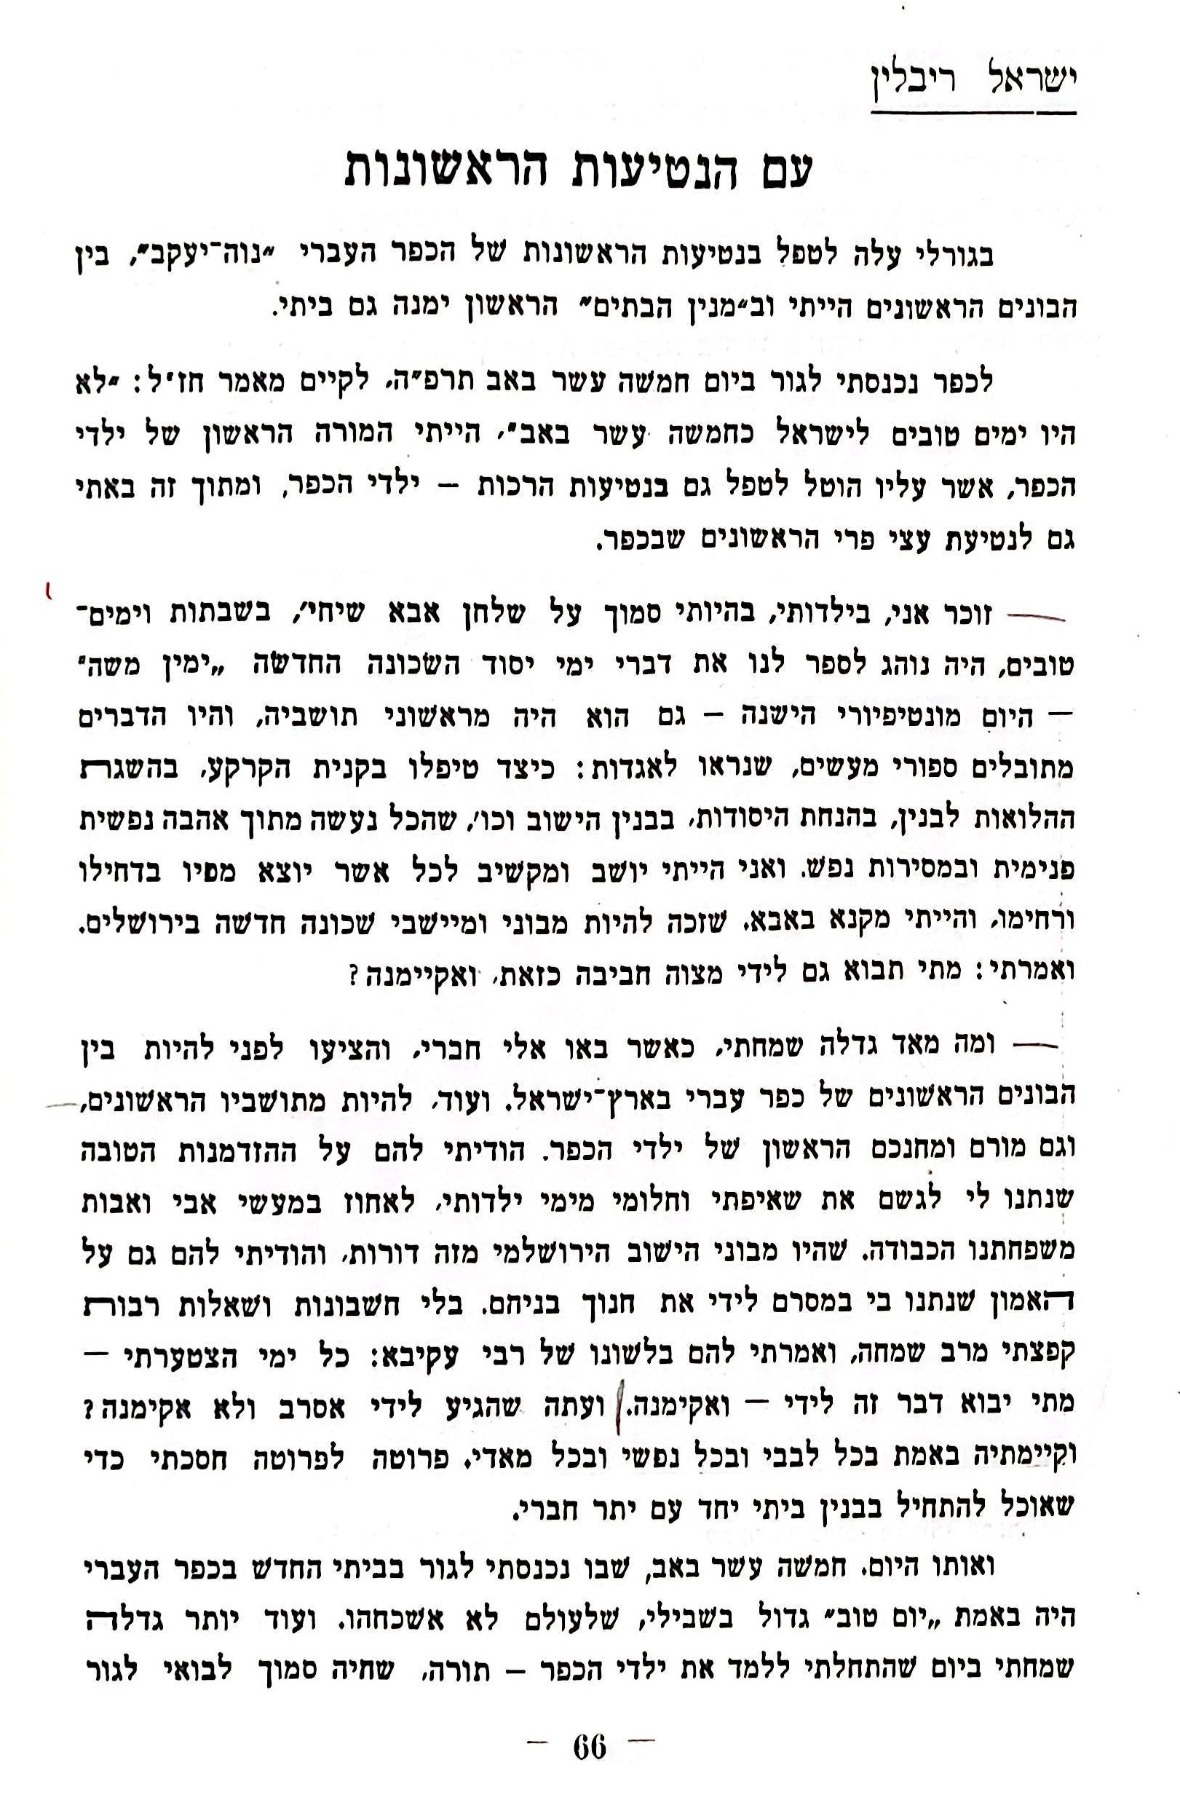 תיאורו של ישראל ריבלין, אביה של הדסה את הכפר העברי נווה יעקב (מתוך החוברת)